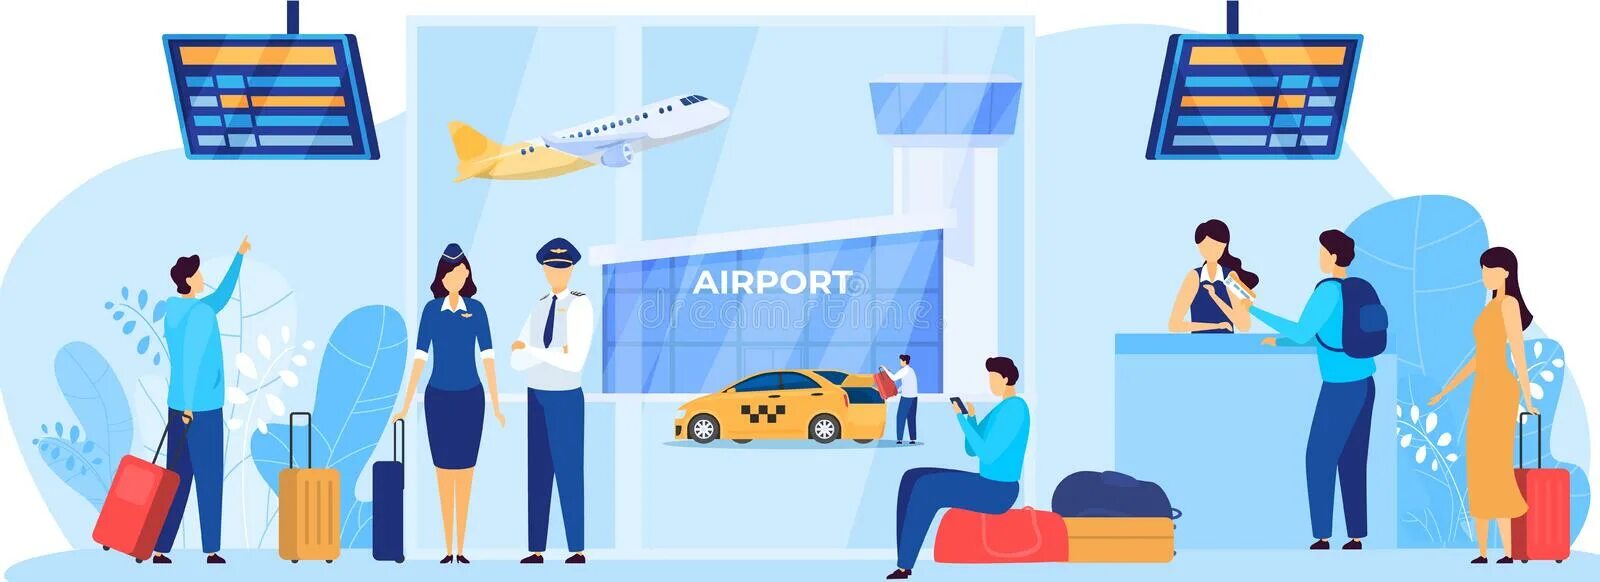 Аэропорт иллюстрация. Информационное обслуживание в аэропорту. Услуги в аэропорту. Аэропорт услуги картинка.